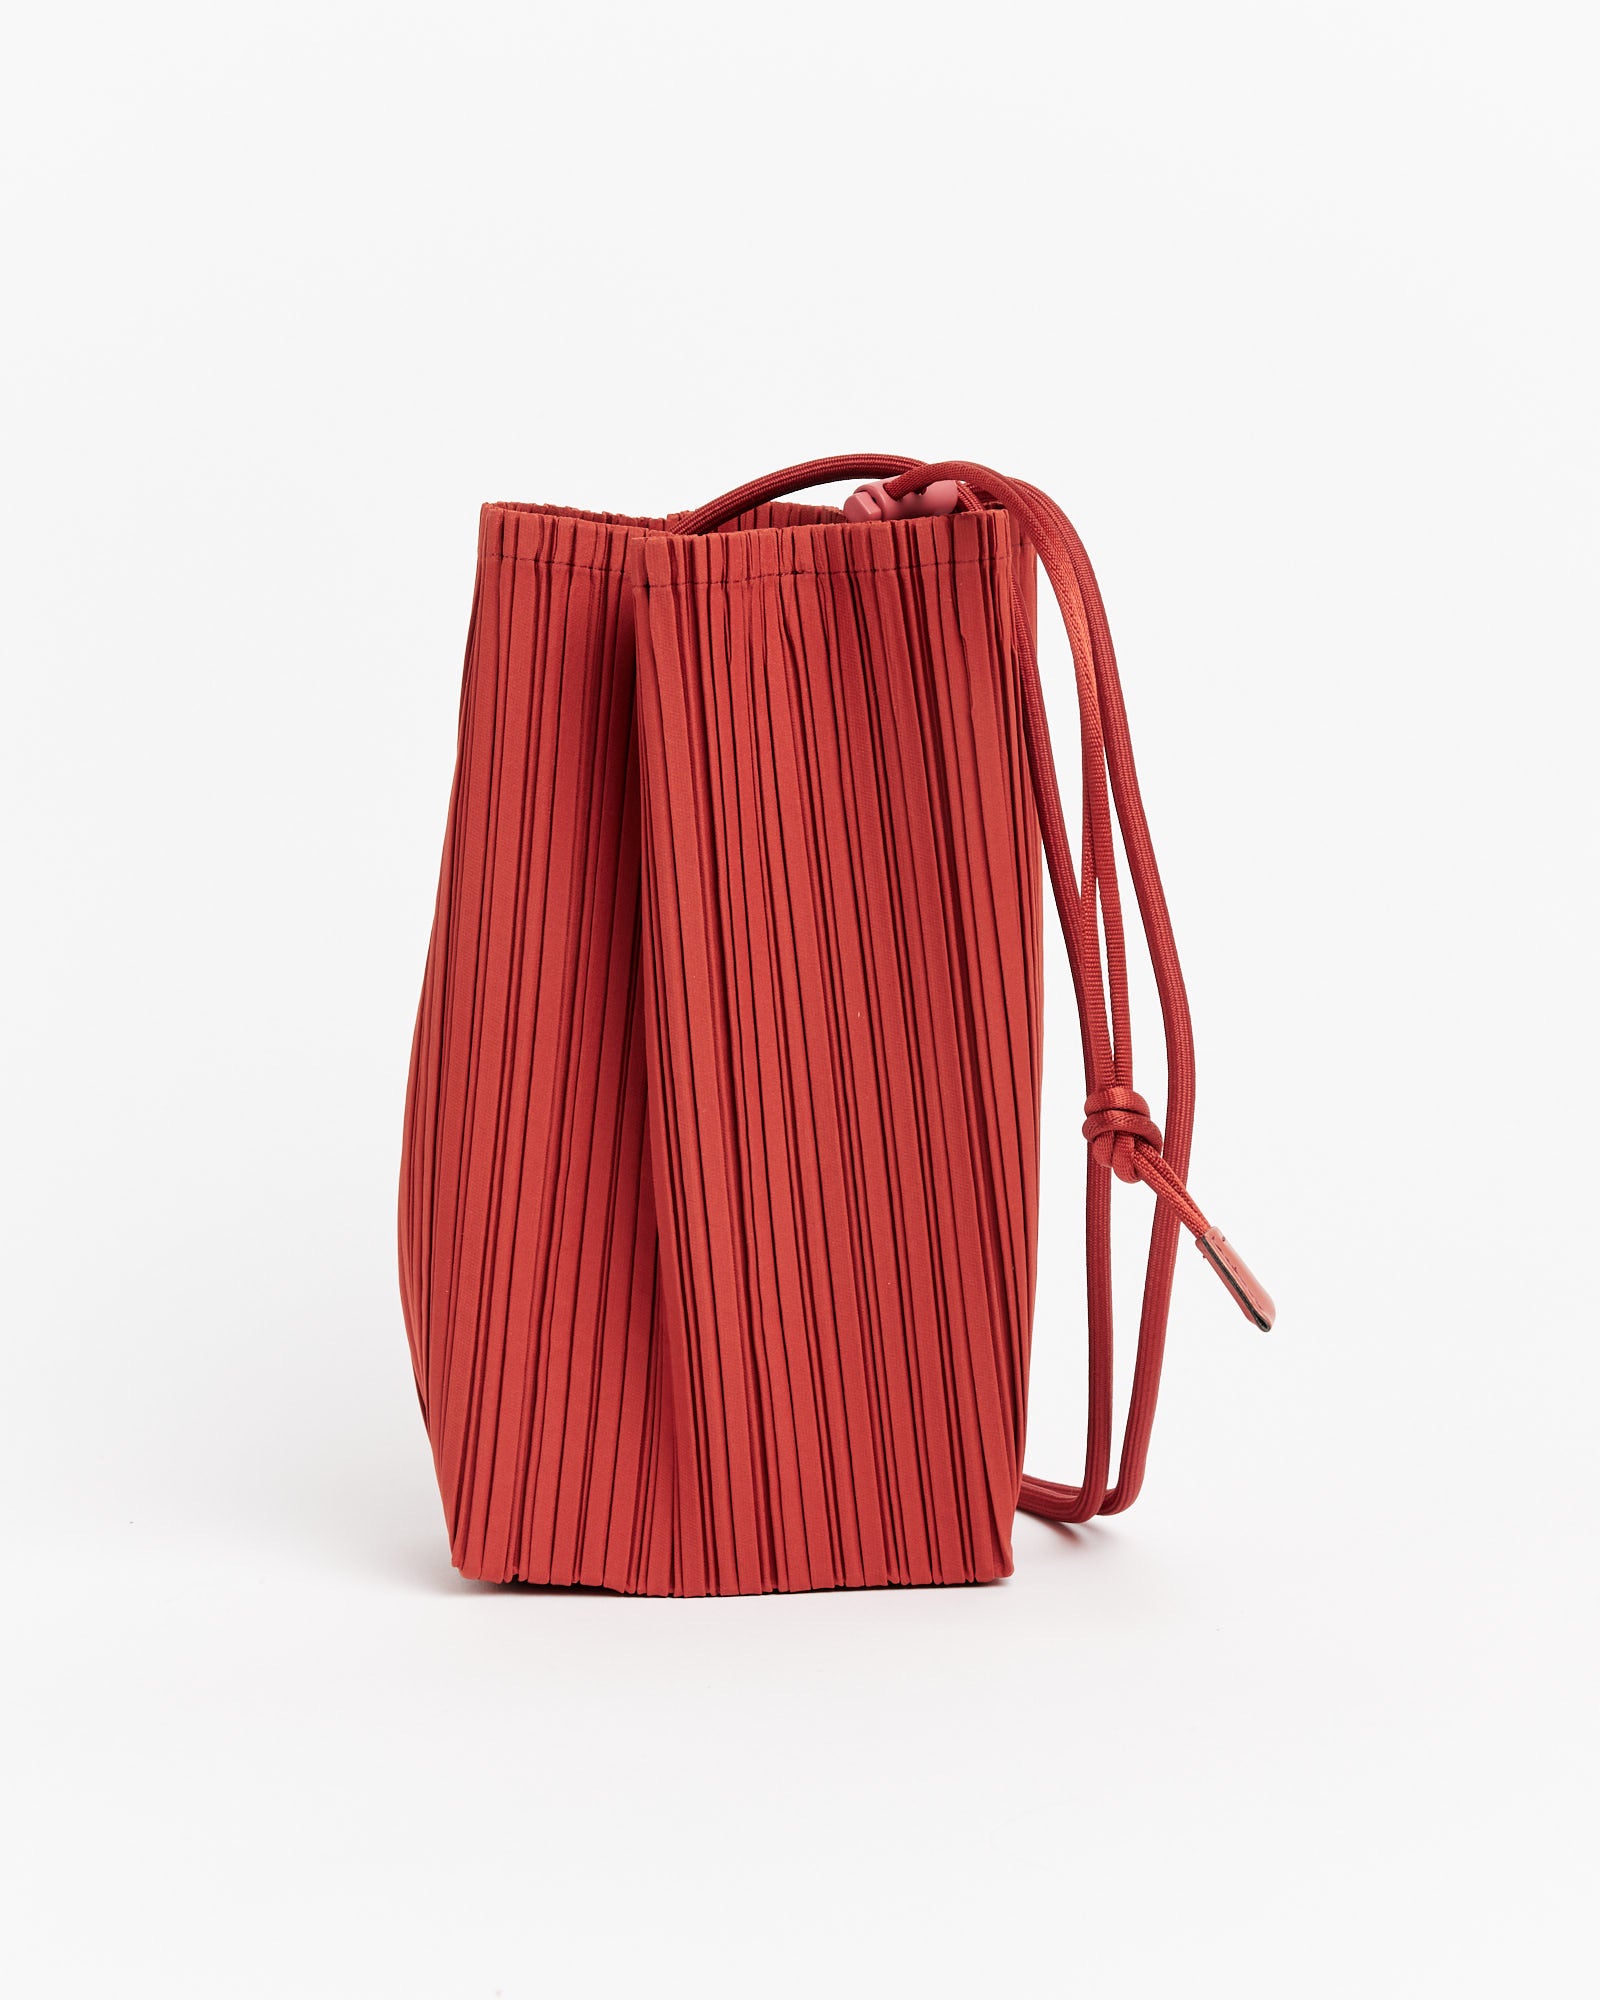 Bloom Bag in Dark Red